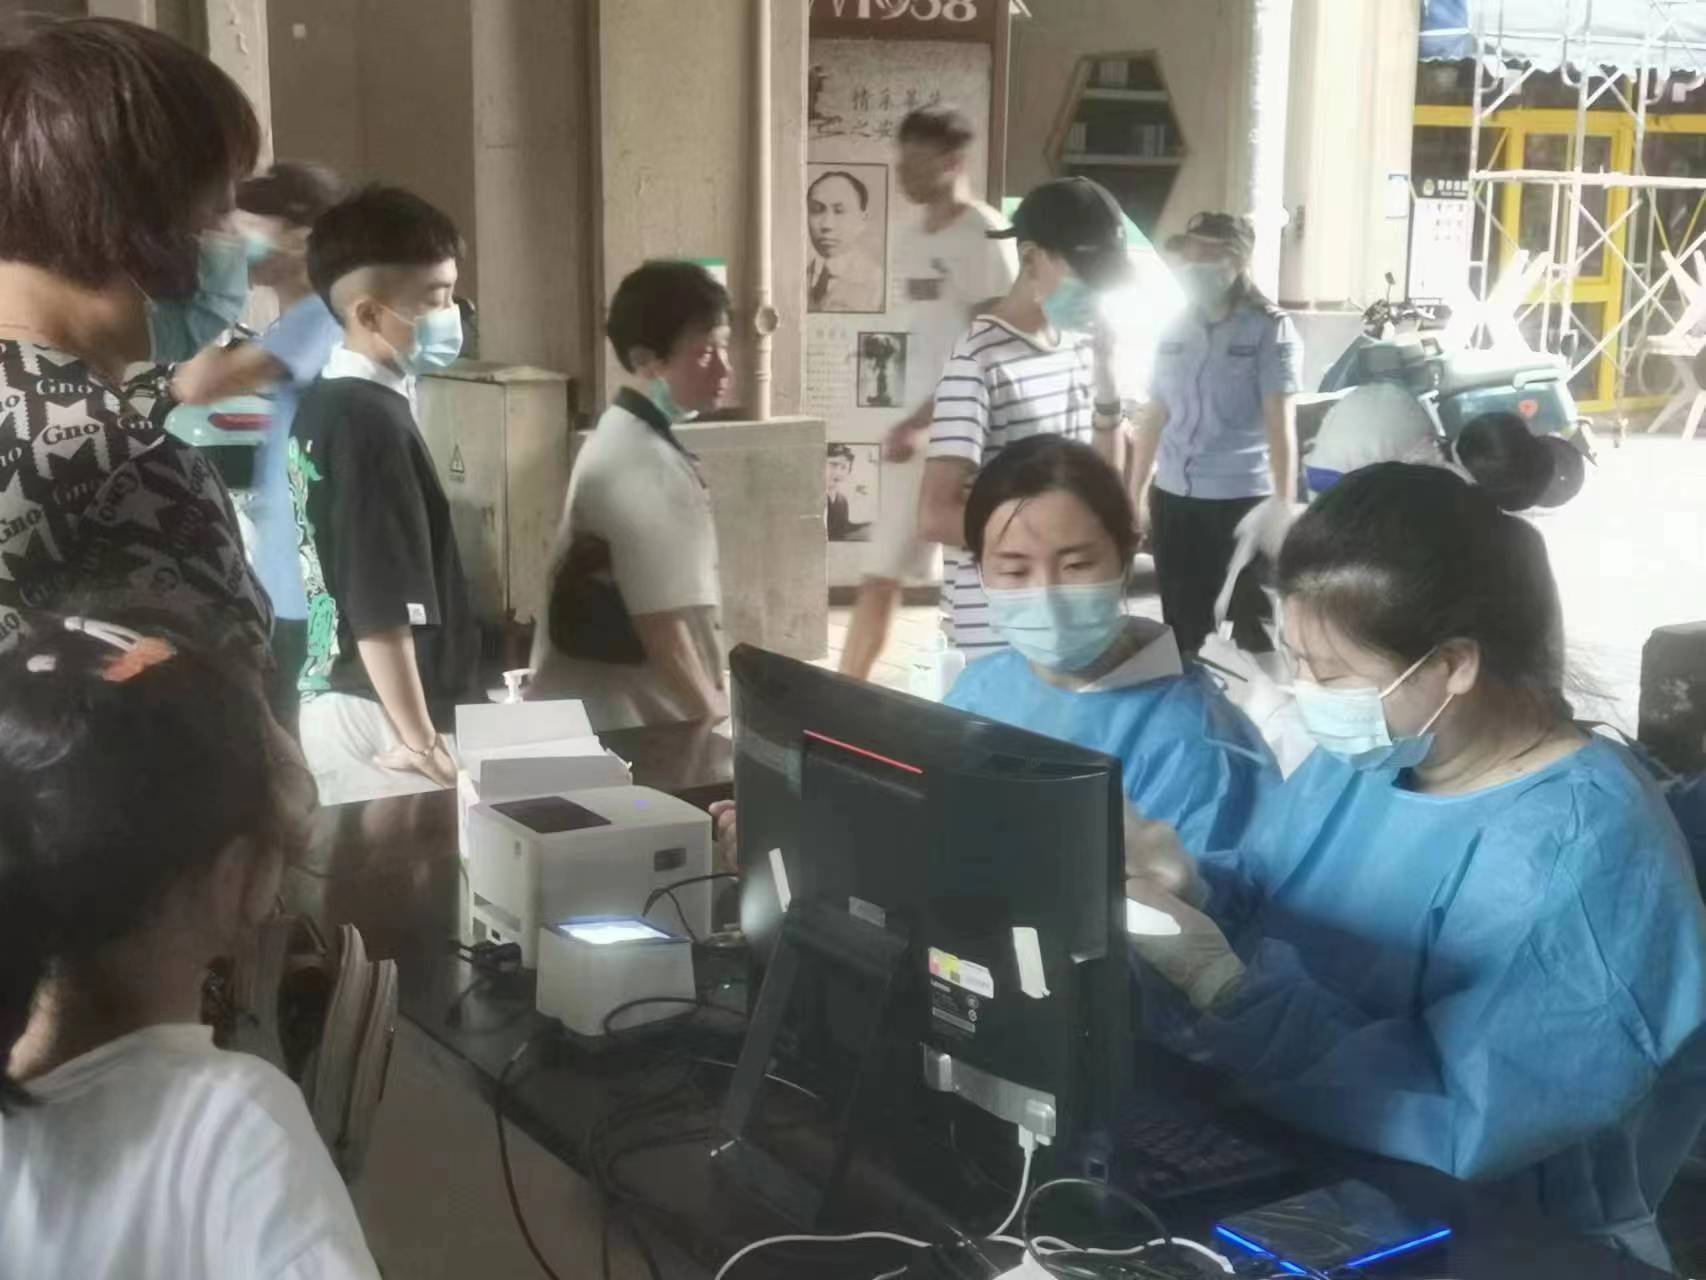 安庆市残疾人康复中心党支部党员志愿者协助社区开展核酸检测工作